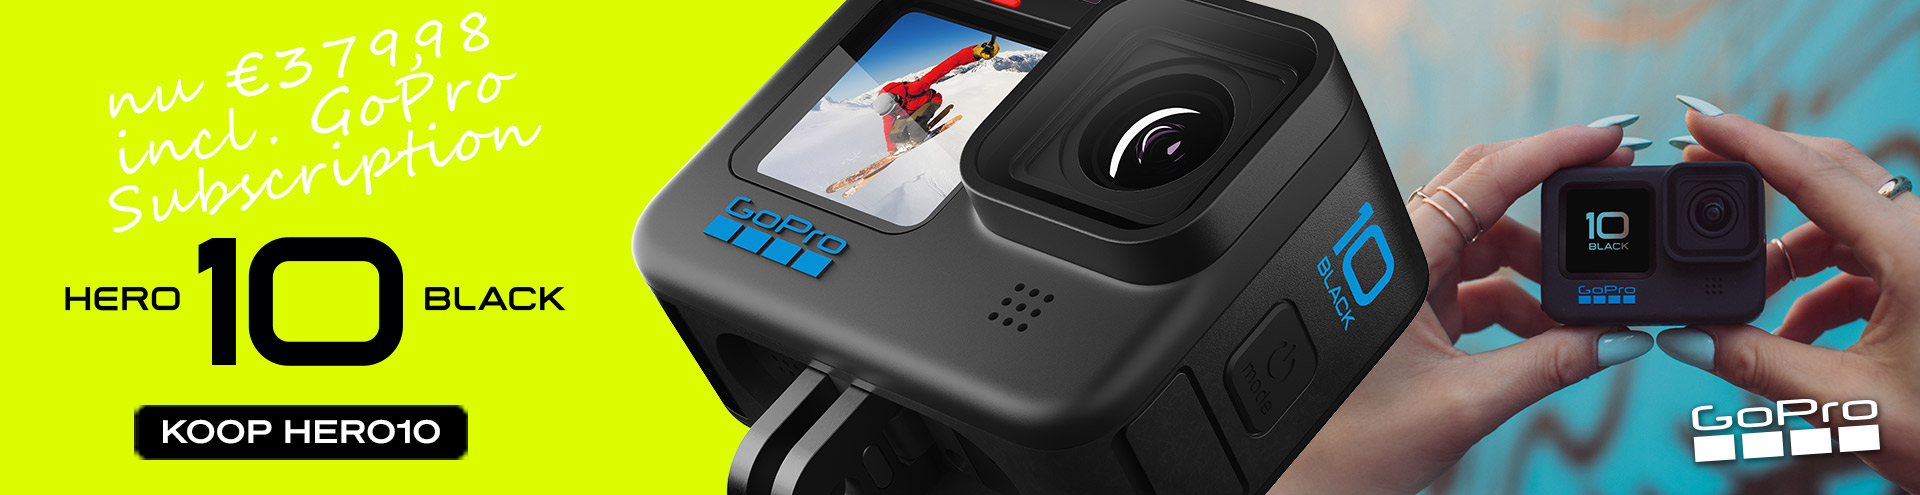 Bespaar € 200 op de HERO10 Black – abonneer je op GoPro en koop de HERO10 voor slechts € 379,98. Deze aanbieding omvat een GoPro HERO10 Black, extra batterij, een SD-kaart van 32 GB en een 1-jarig abonnement op GoPro. Nu kopen!